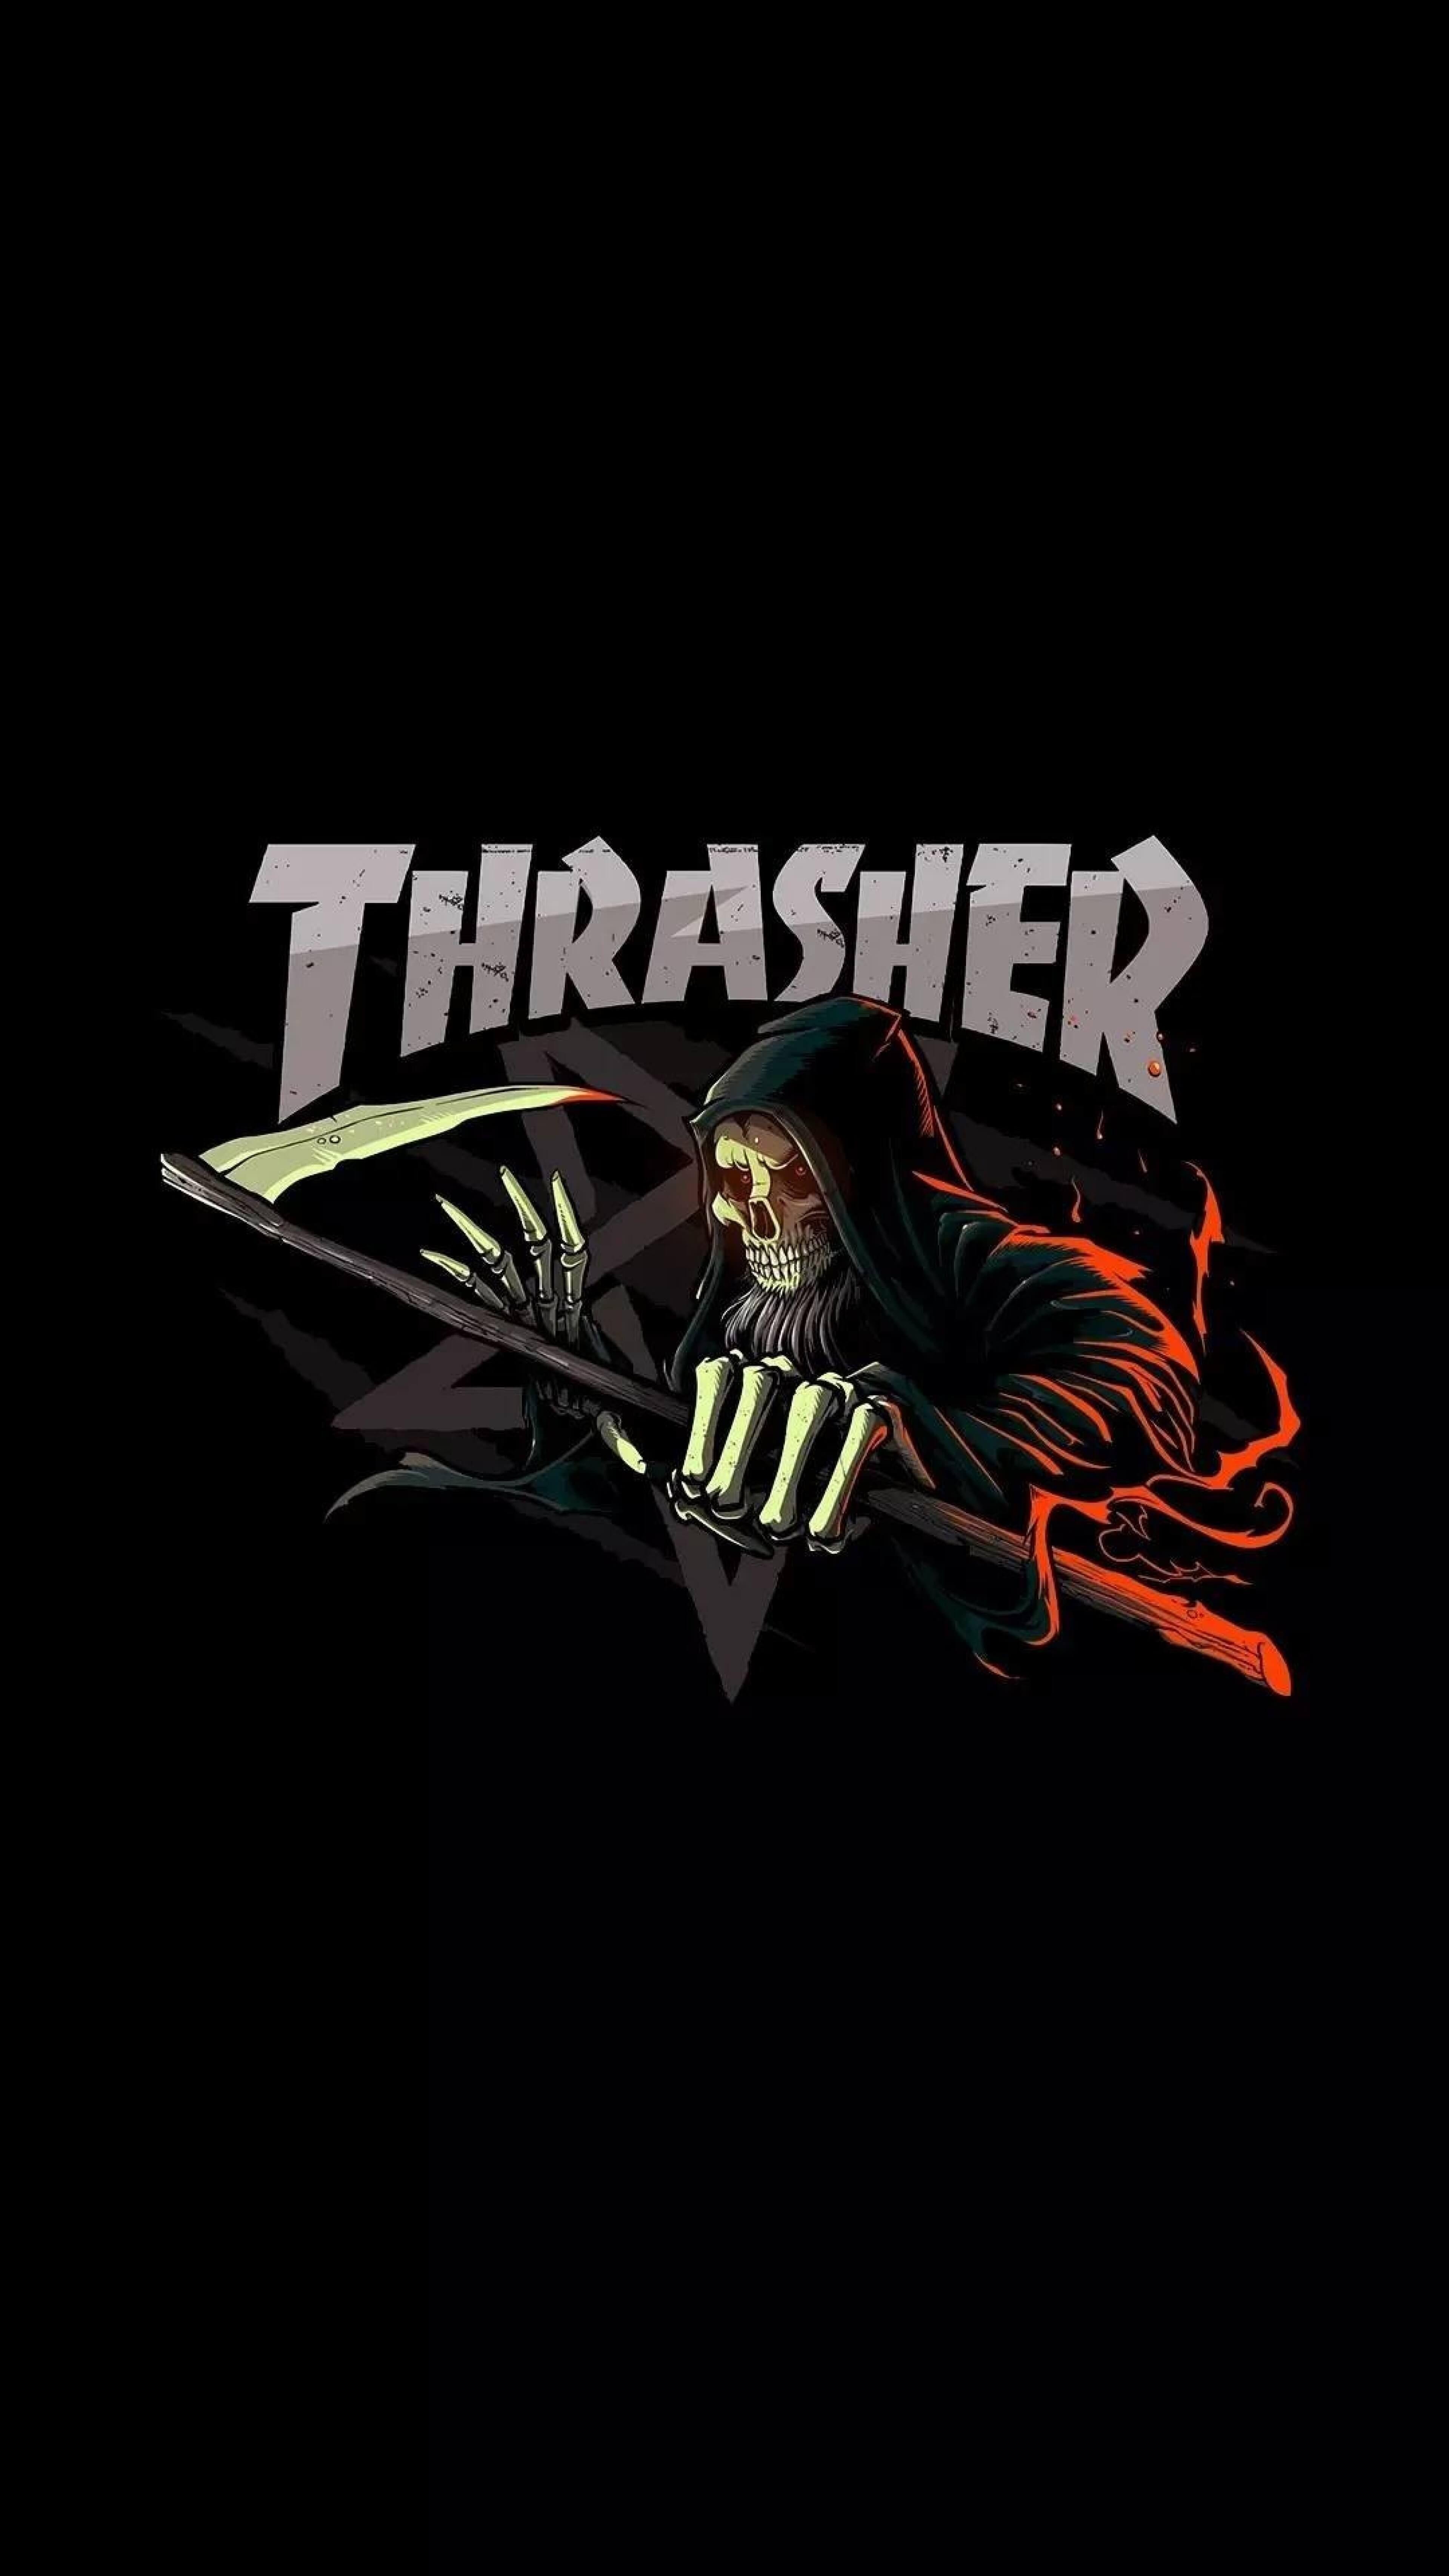 Thrasher Wallpaper Logo - Thrasher Wallpaper 4K HD Windows | Wallpaper in 2019 | Hypebeast ...